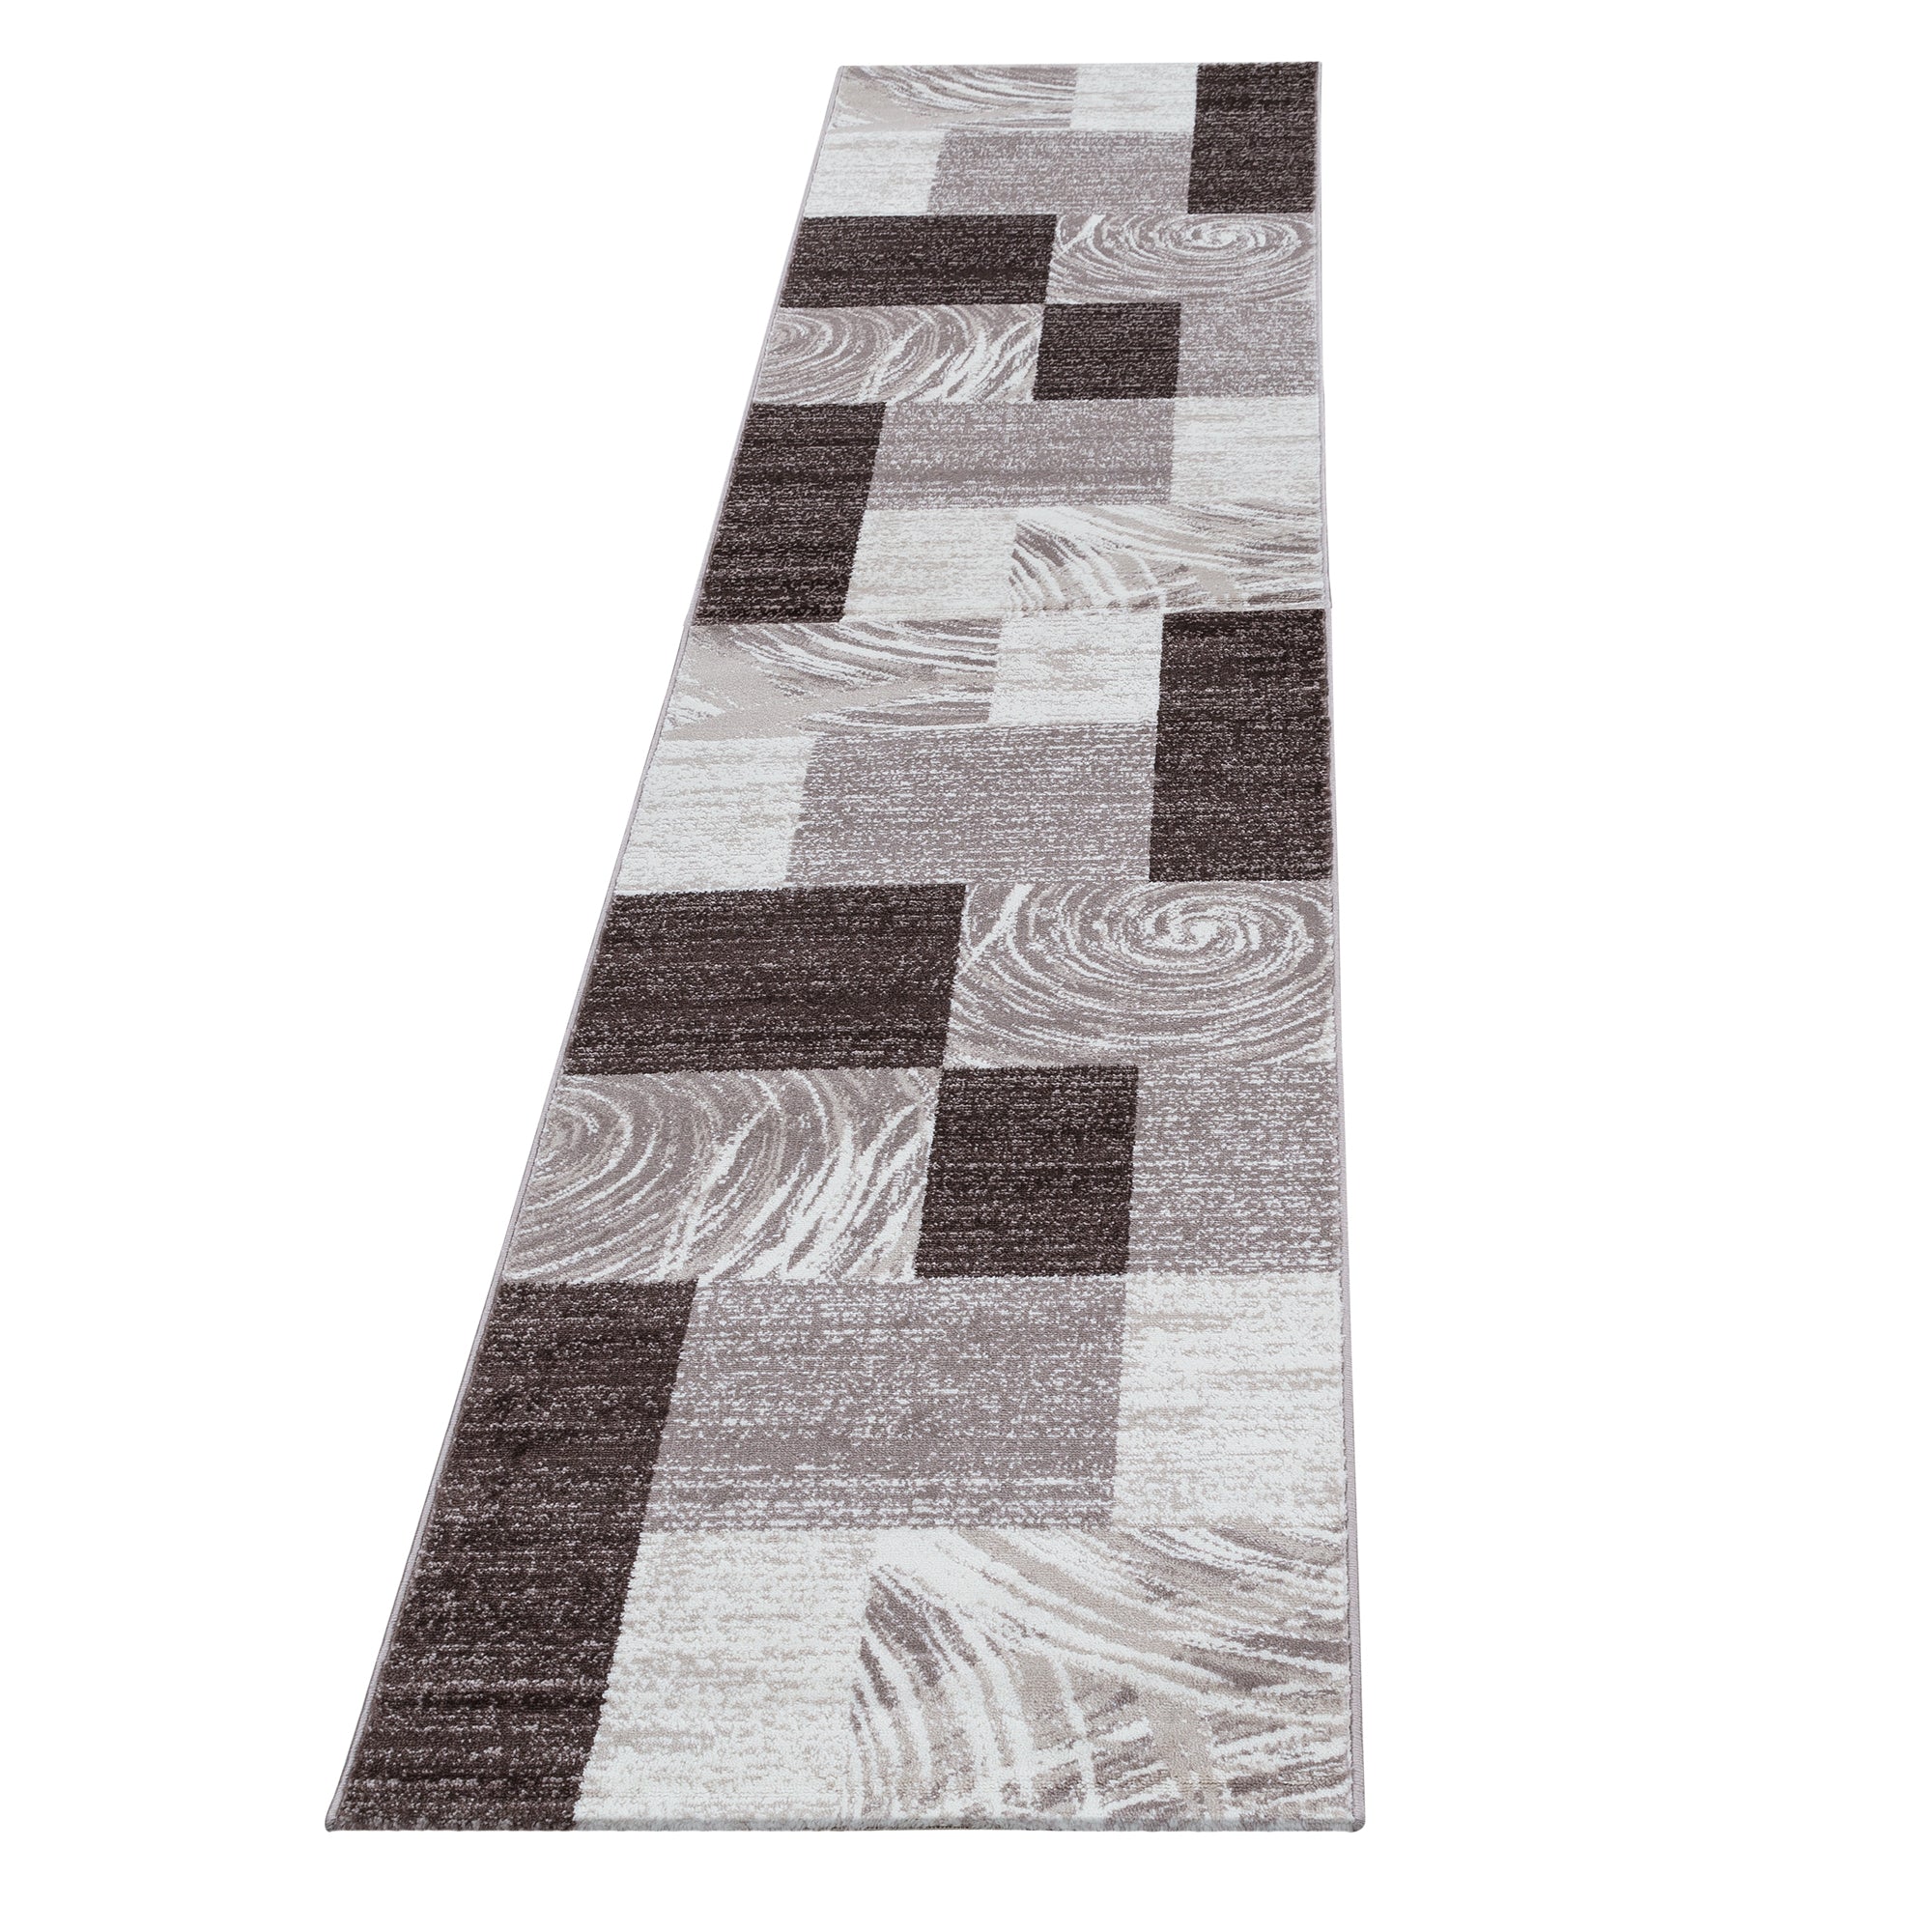 Bettumrandung Läufer Set Teppich Modern Kariert Muster 3 Teilig Braun Beige Crem